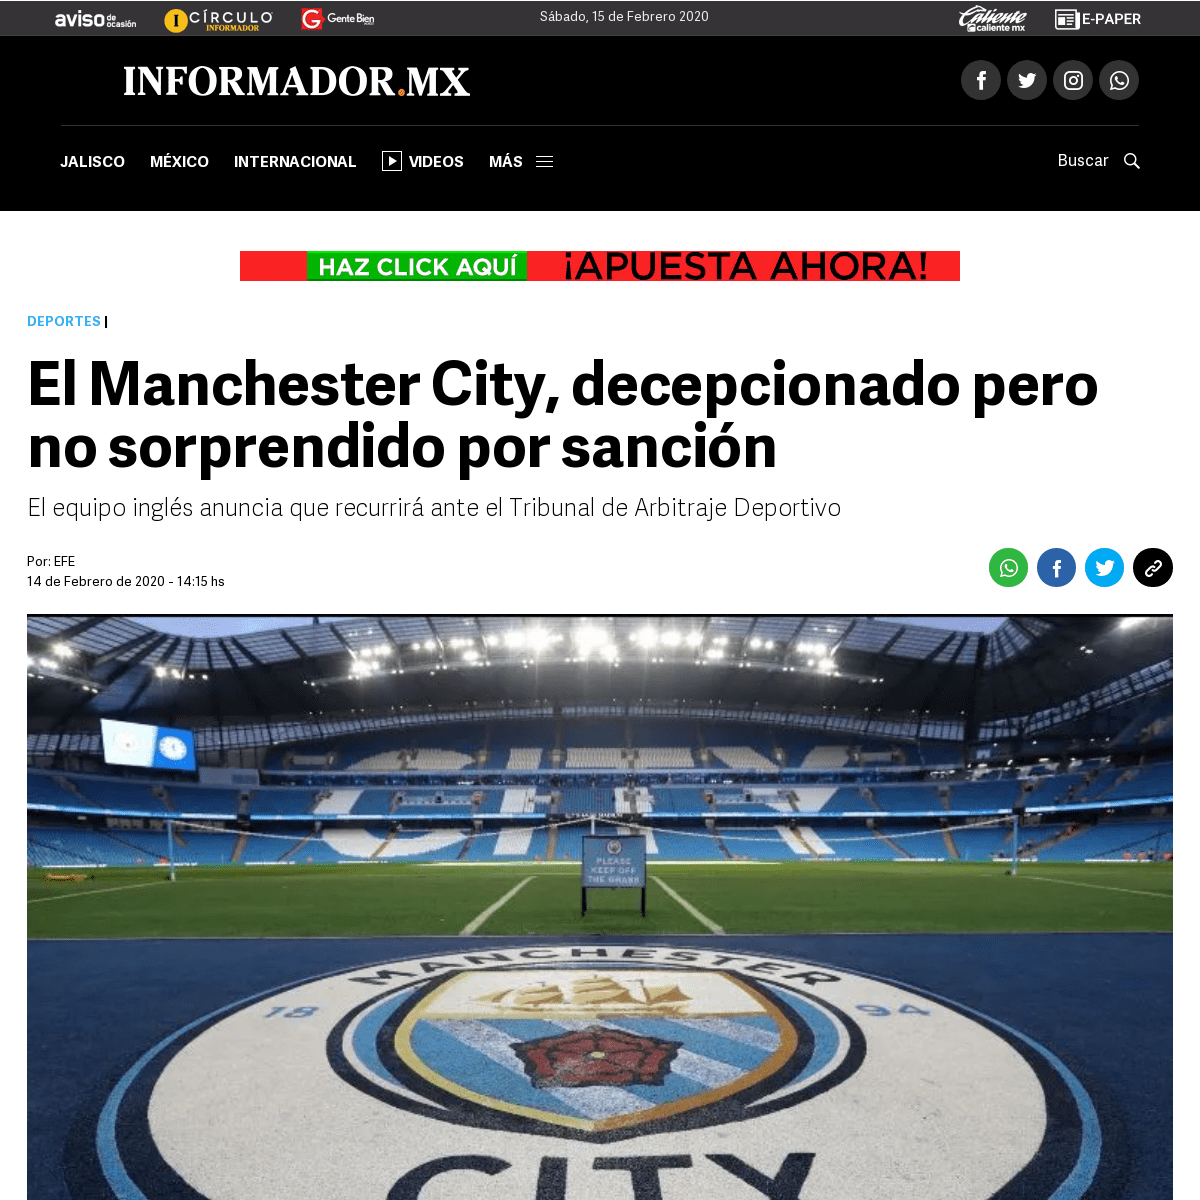 A complete backup of www.informador.mx/deportes/El-Manchester-City-decepcionado-pero-no-sorprendido-por-sancion-20200214-0072.ht